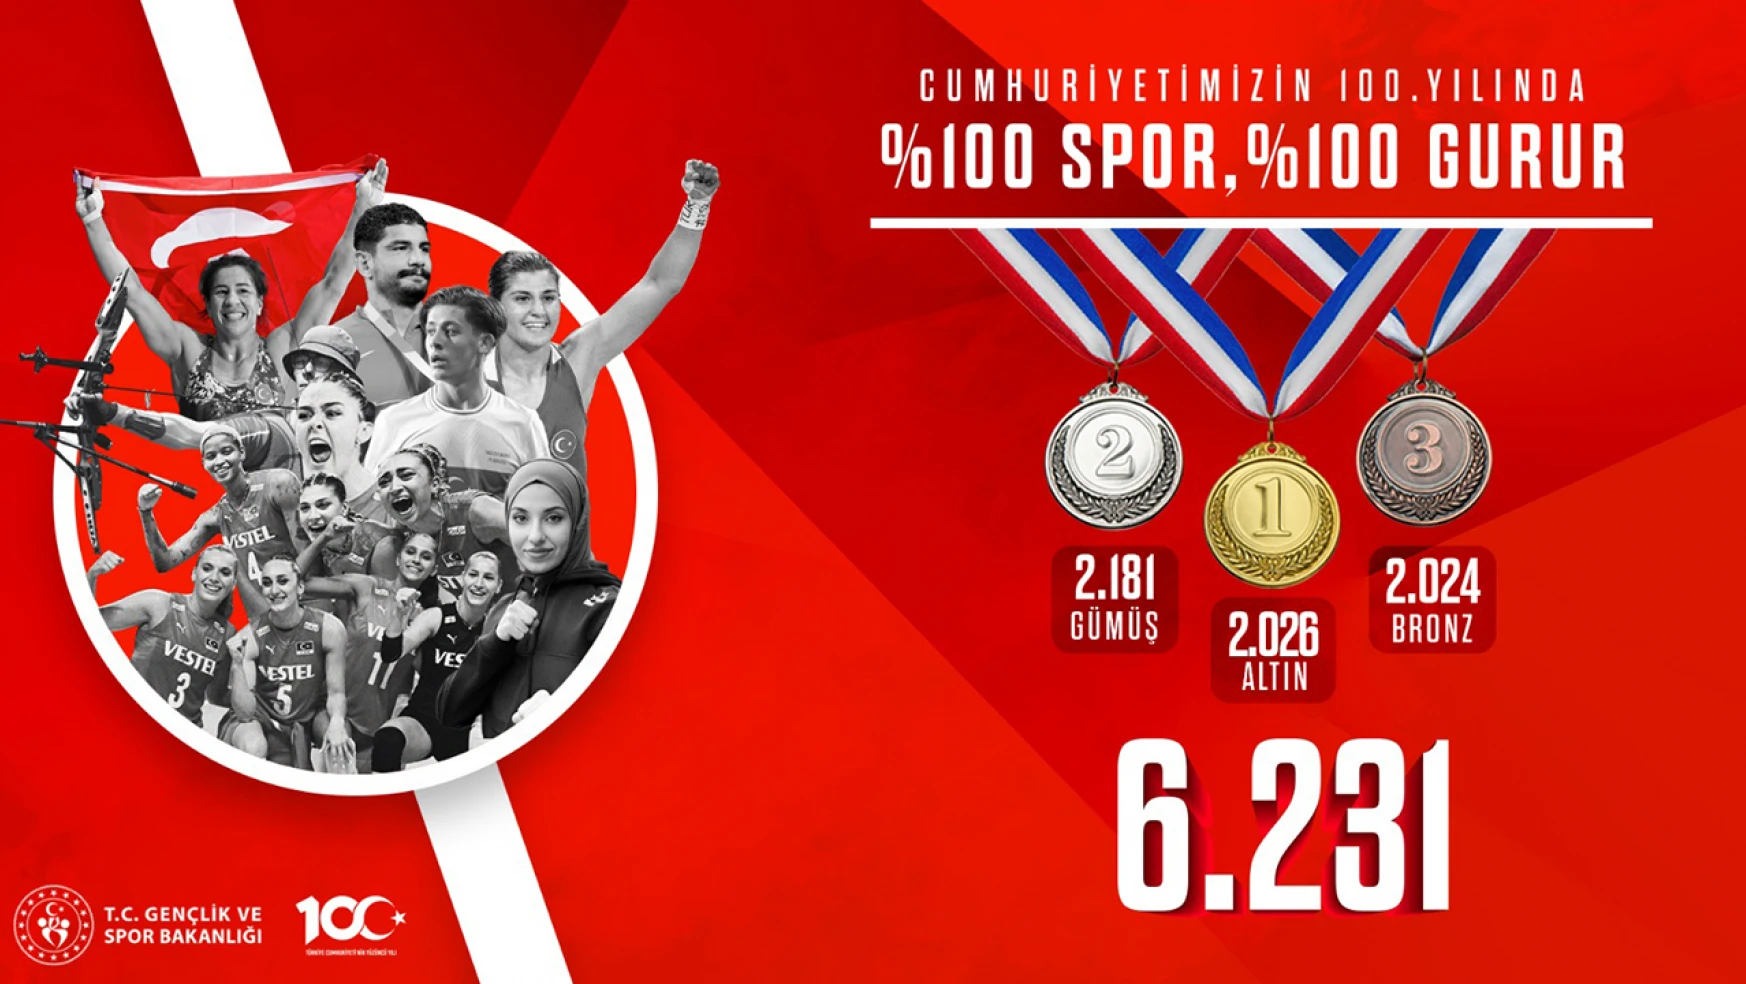 Milli sporcular, uluslararası müsabakalarda 6 bin 231 madalya kazandı